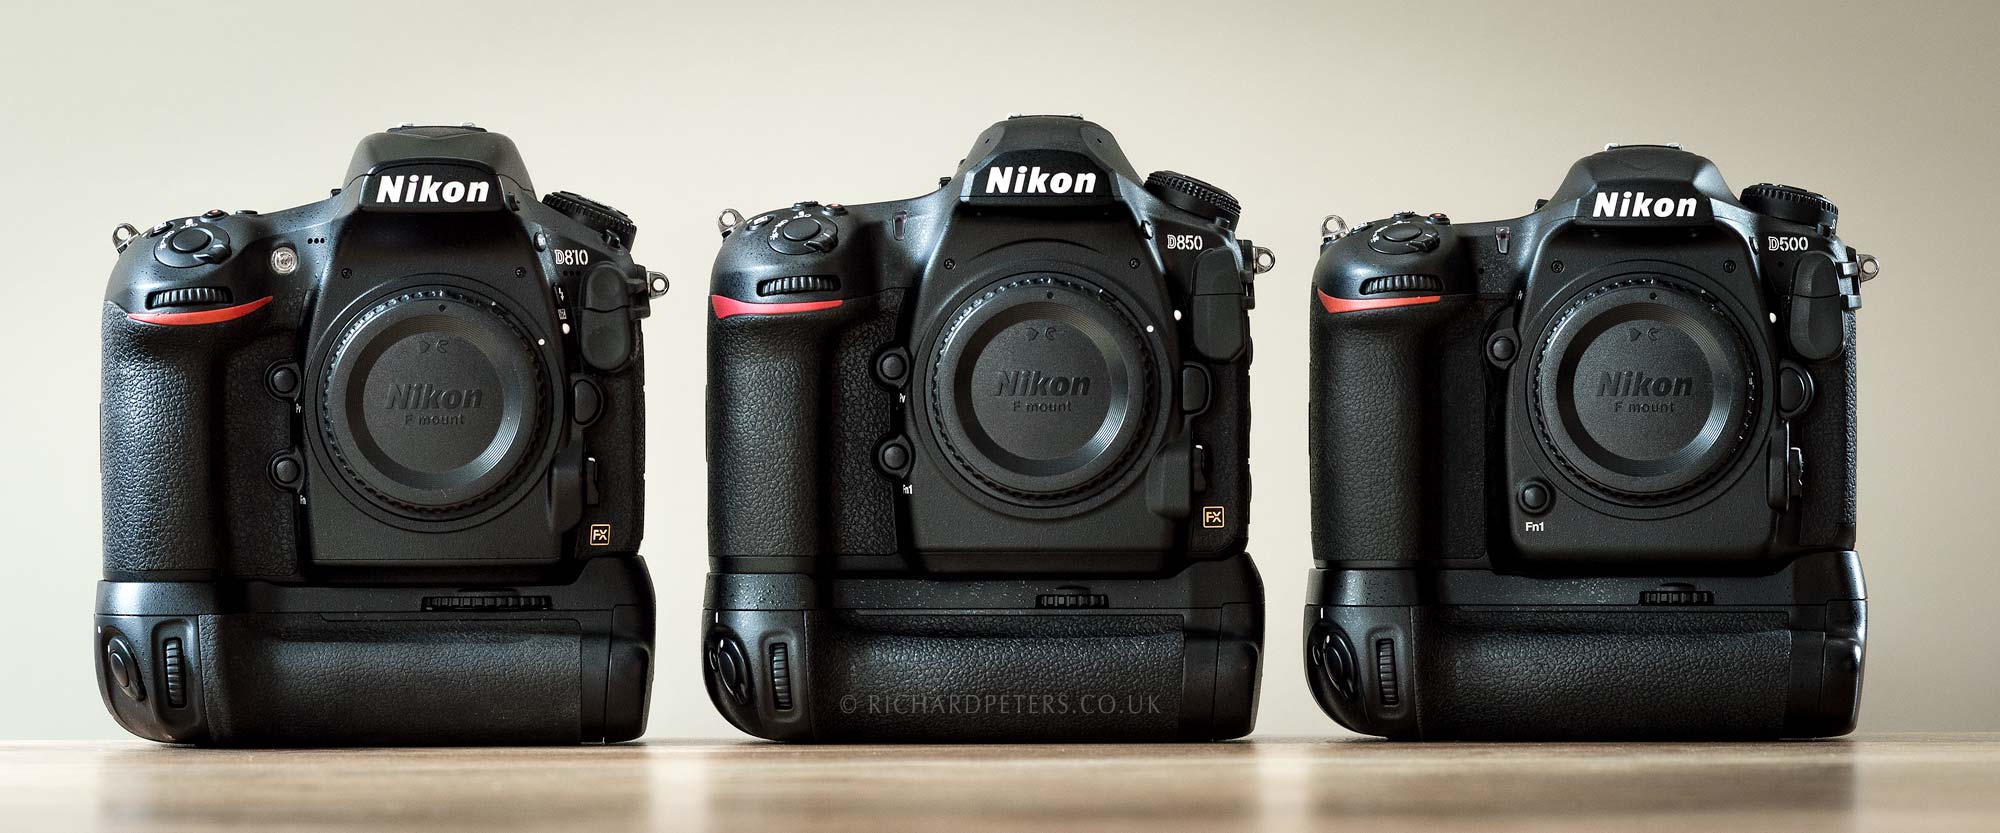 Nikon D850 review and D810, D500 body comparisons